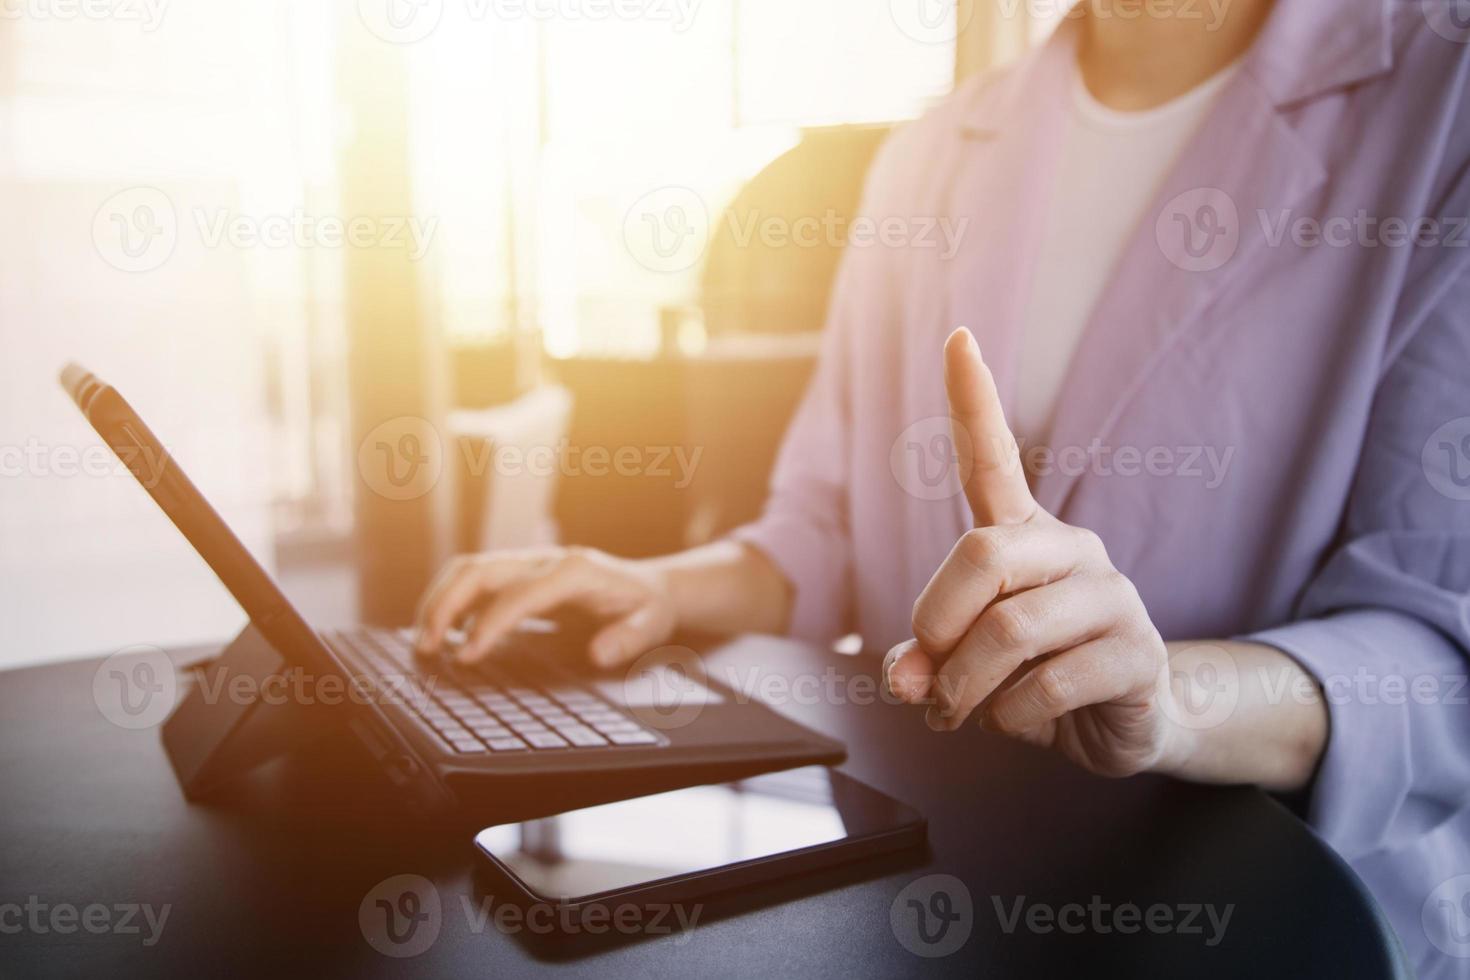 close-up homem multitarefa de mãos usando tablet, laptop e celular conectando wi-fi foto